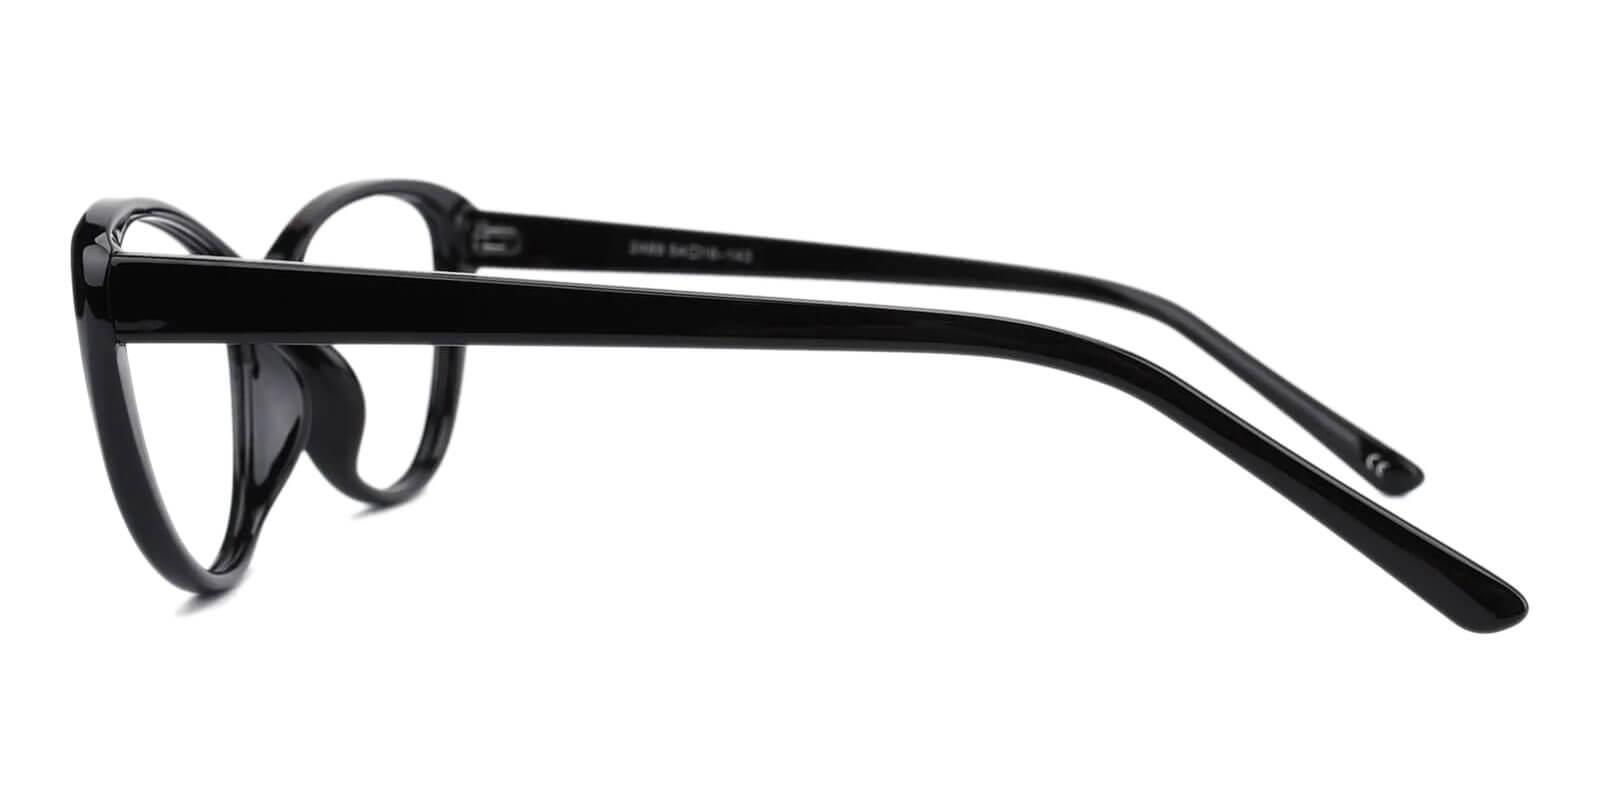 Olga Black Plastic Eyeglasses Frames from ABBE Glasses